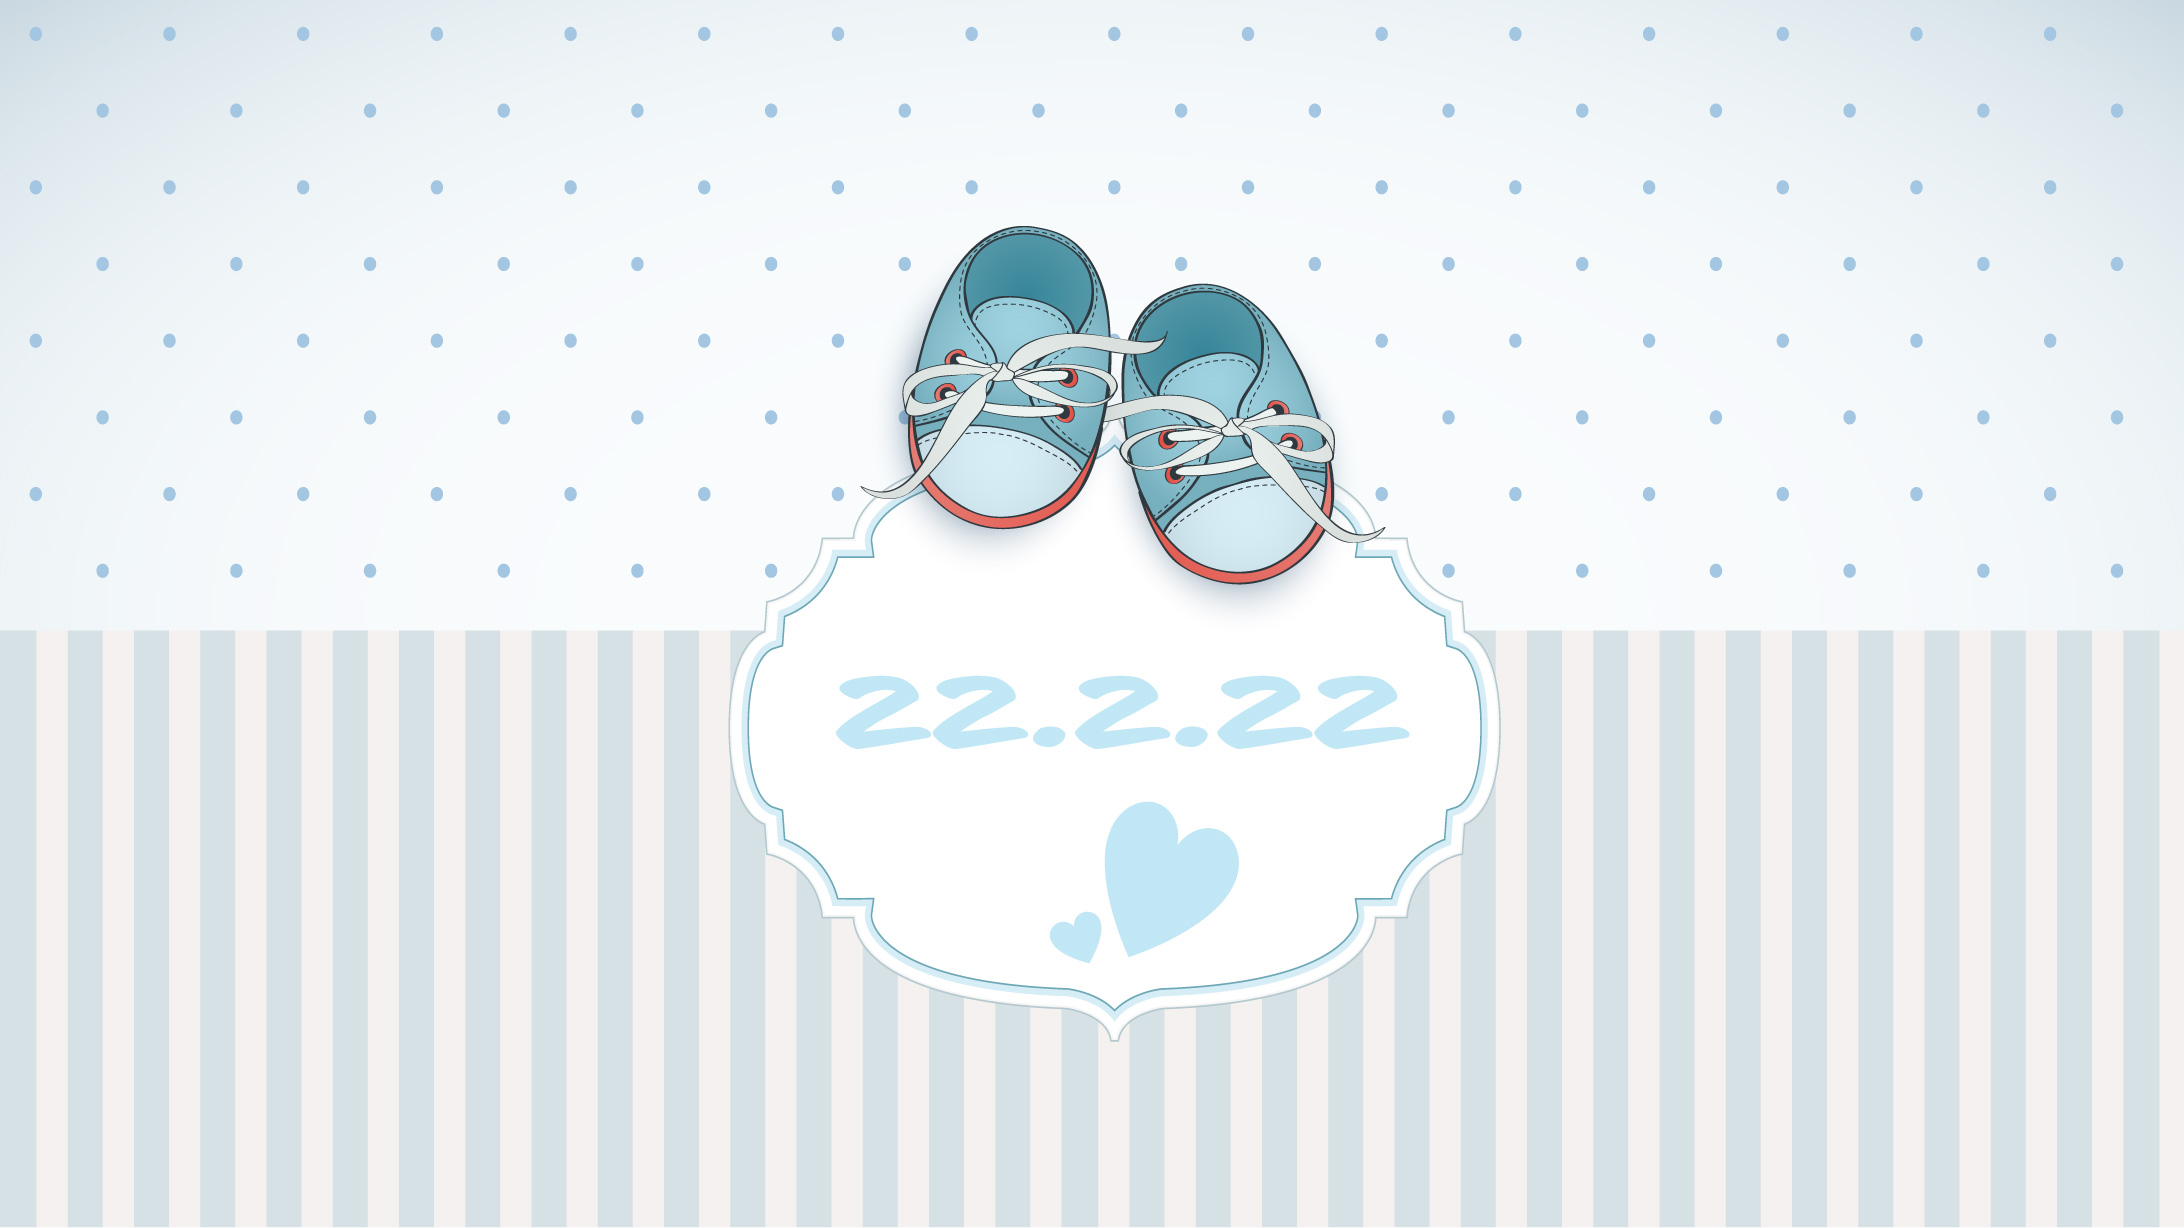 Geburt am Wunschdatum: Kinderschuhe mit dem Geburtsdatum 22.2.2022